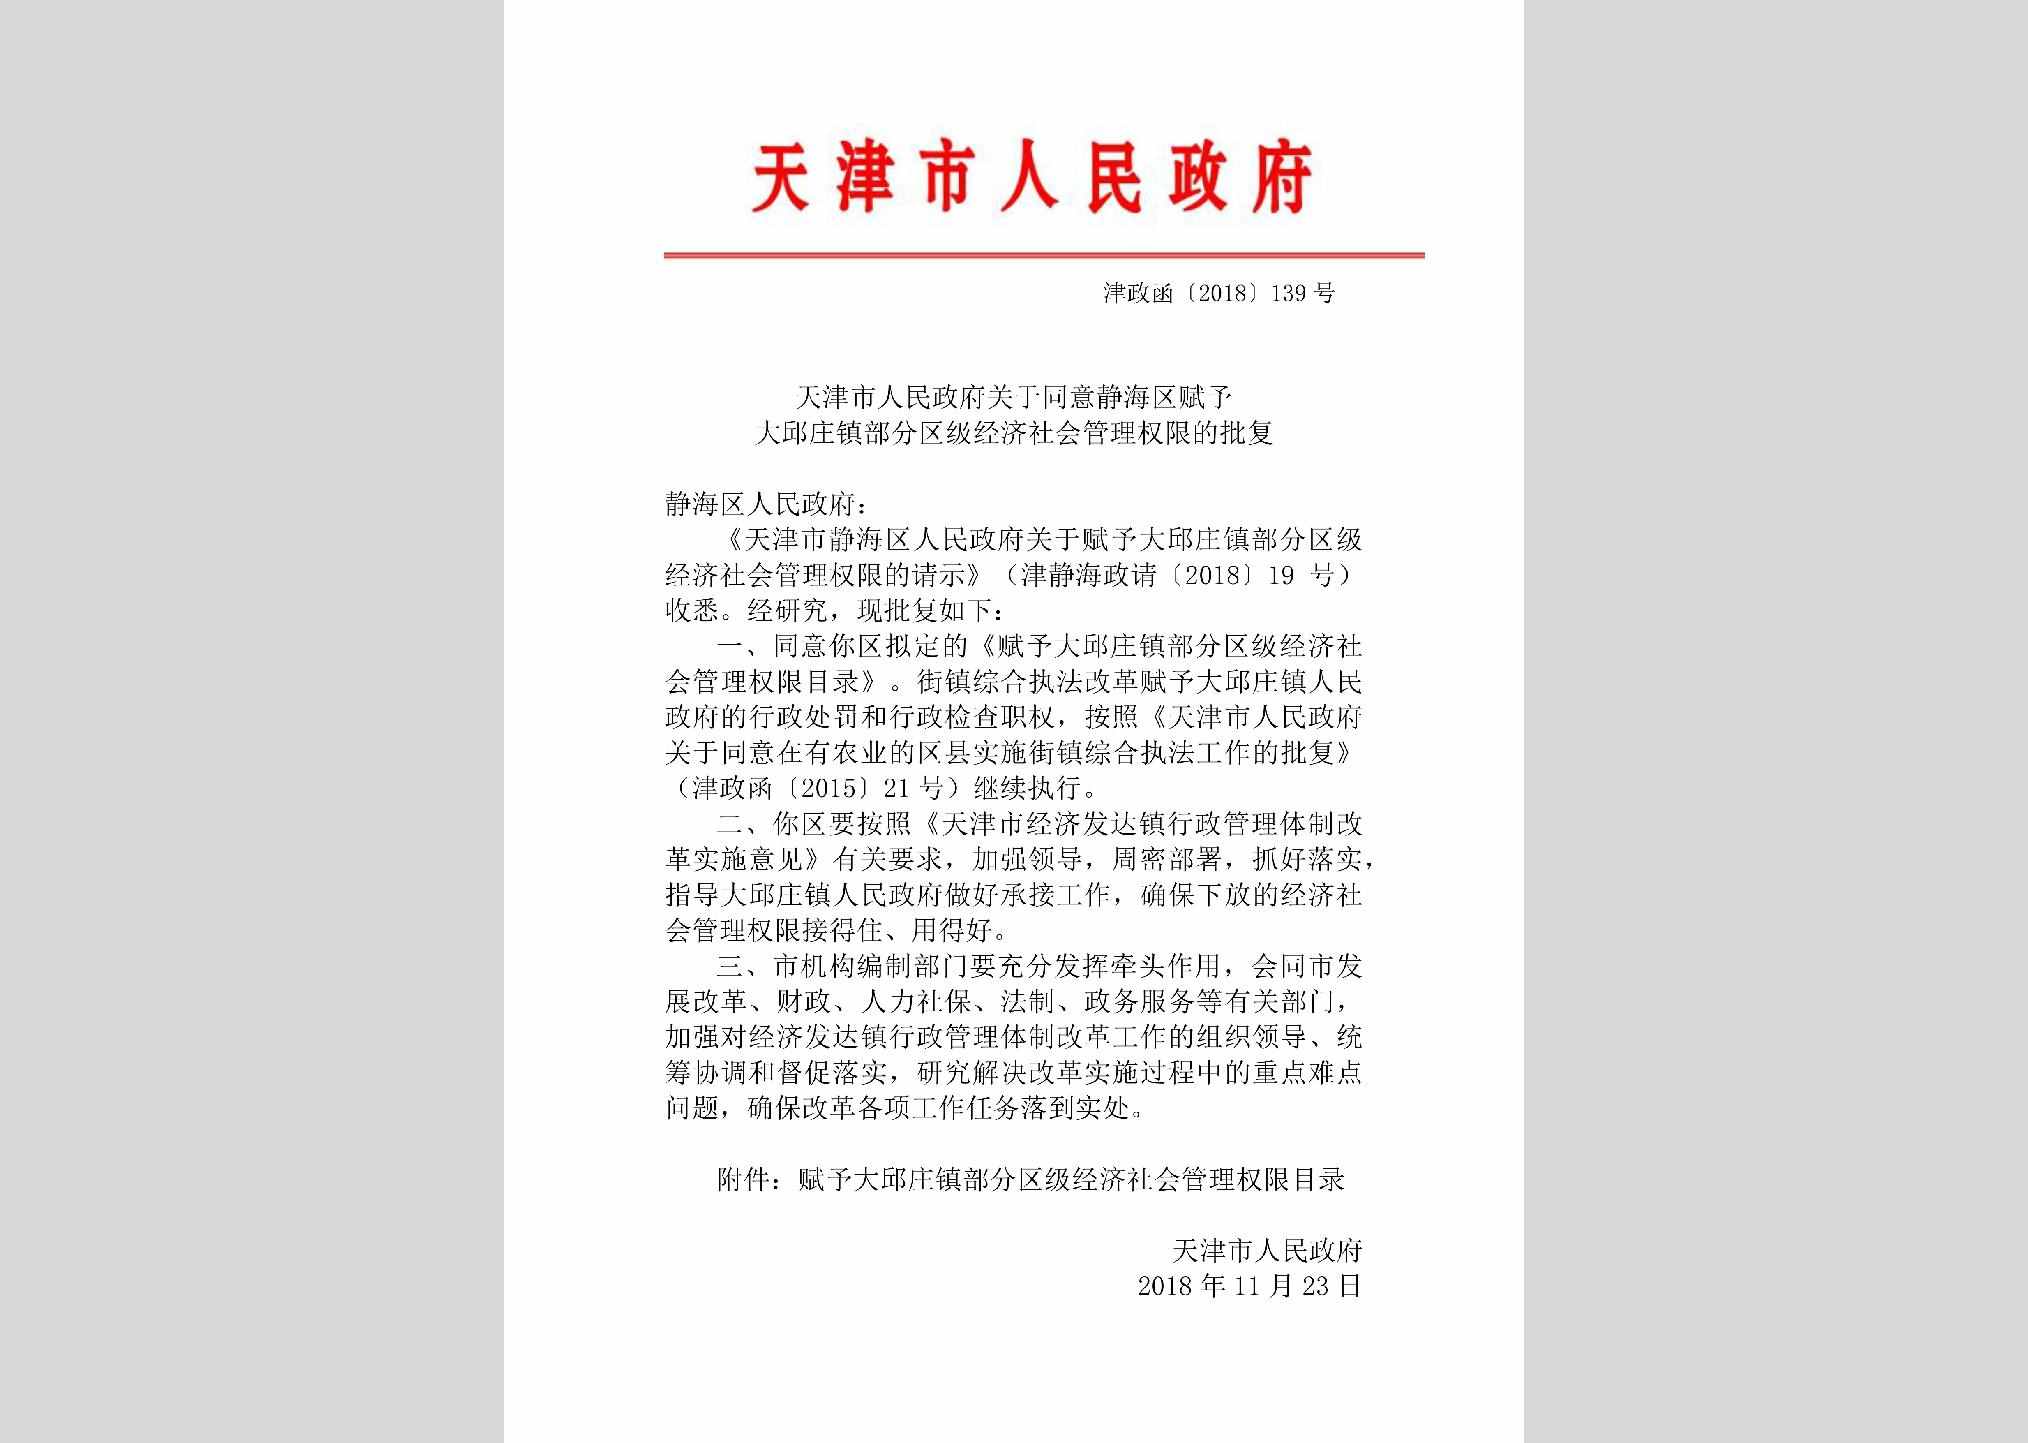 津政函[2018]139号：天津市人民政府关于同意静海区赋予大邱庄镇部分区级经济社会管理权限的批复